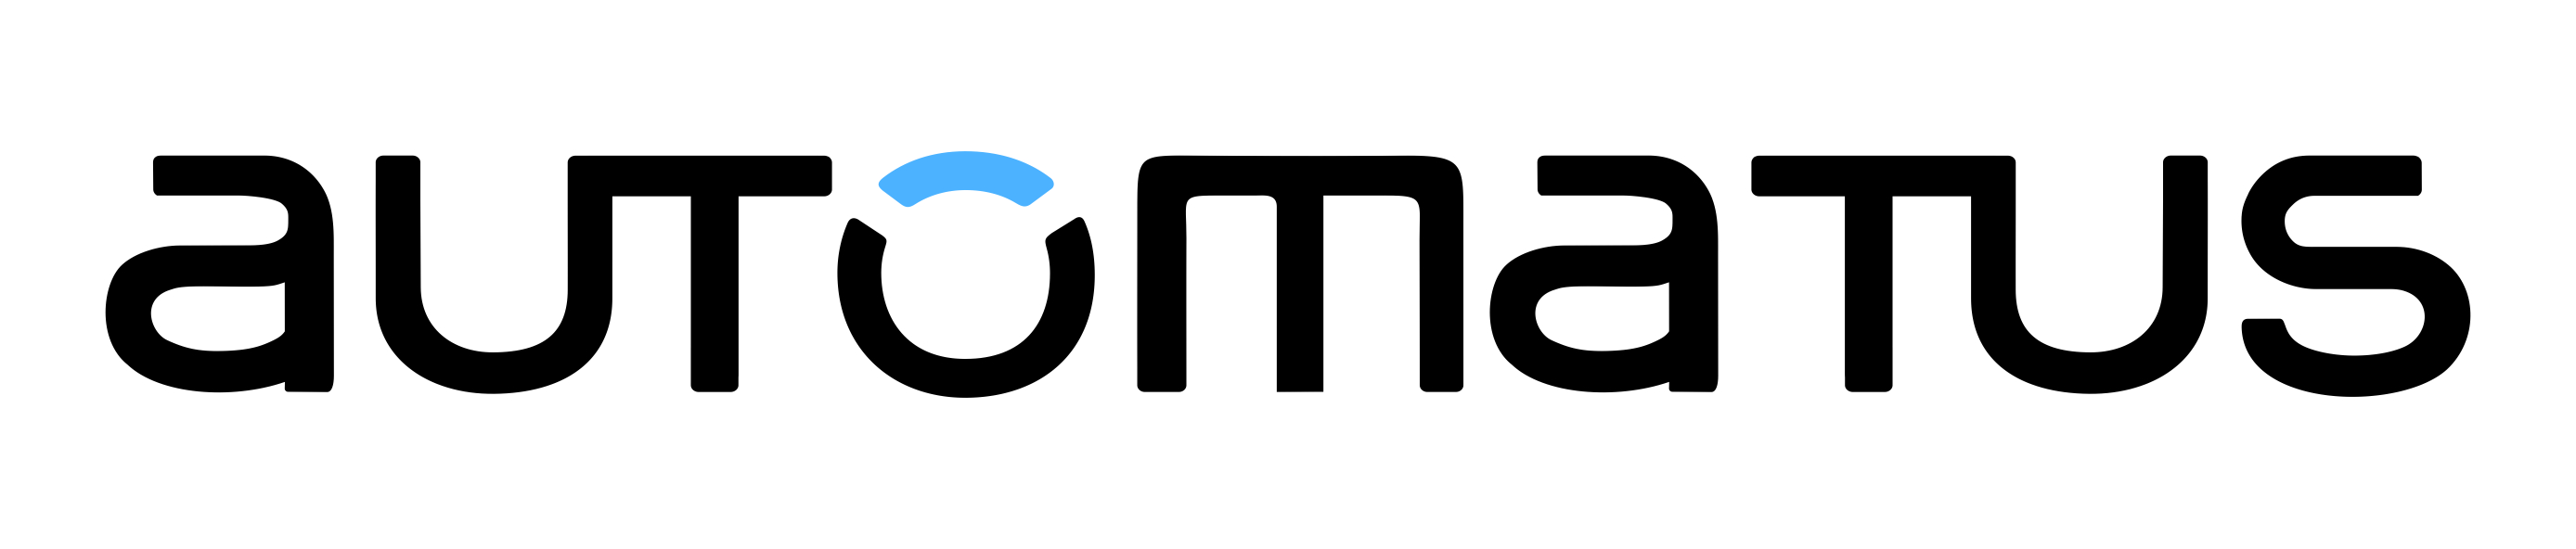 Otimiza Consultoria Logo photo - 1